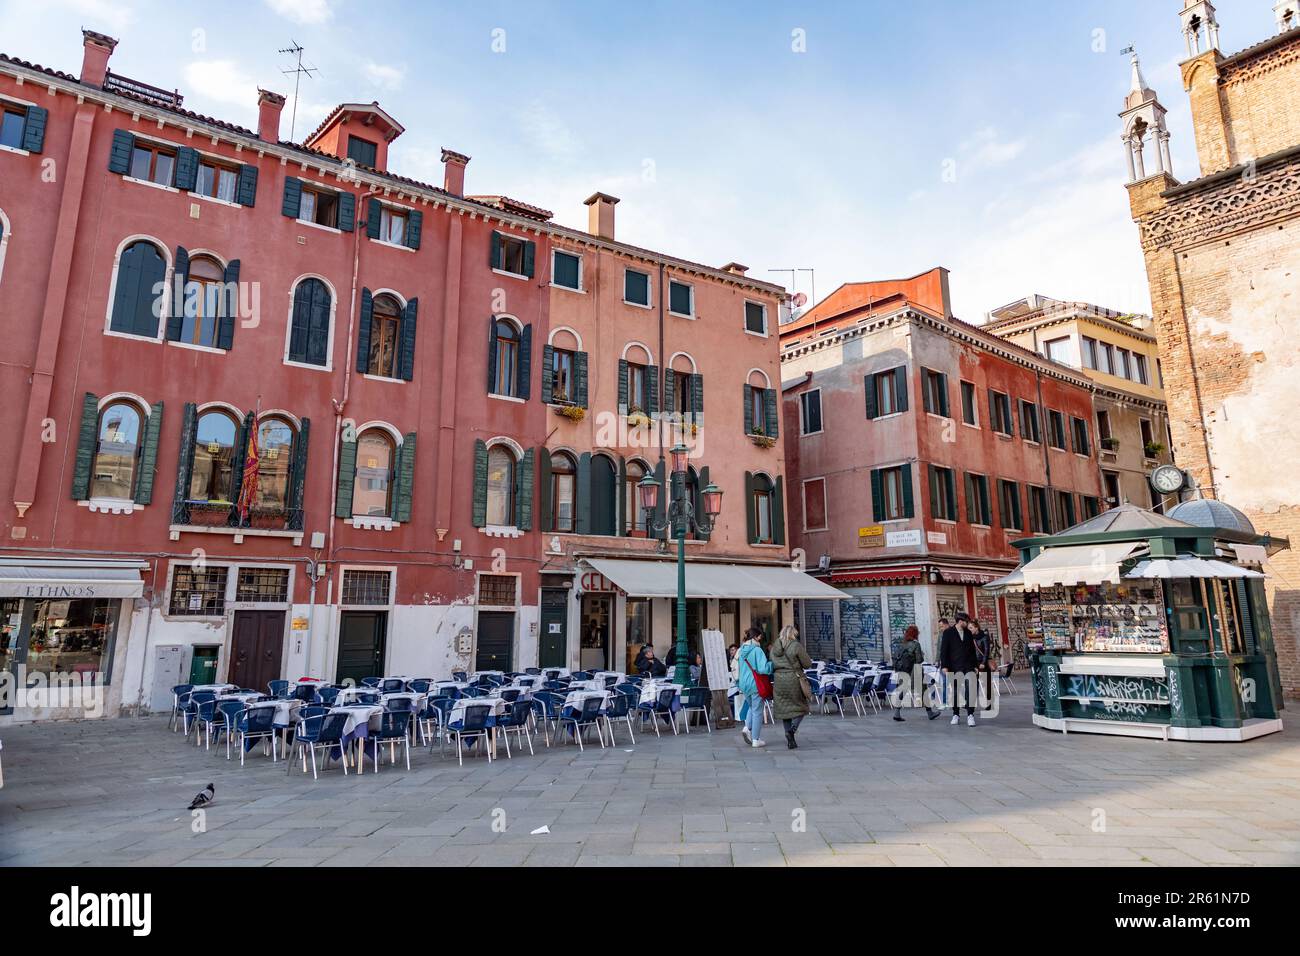 Venezia, Italia - 2 aprile 2022: Campo Santo Stefano è una piazza cittadina nei pressi del Ponte dell'Accademia, nel sestiere di San Marco, Venezia. Foto Stock